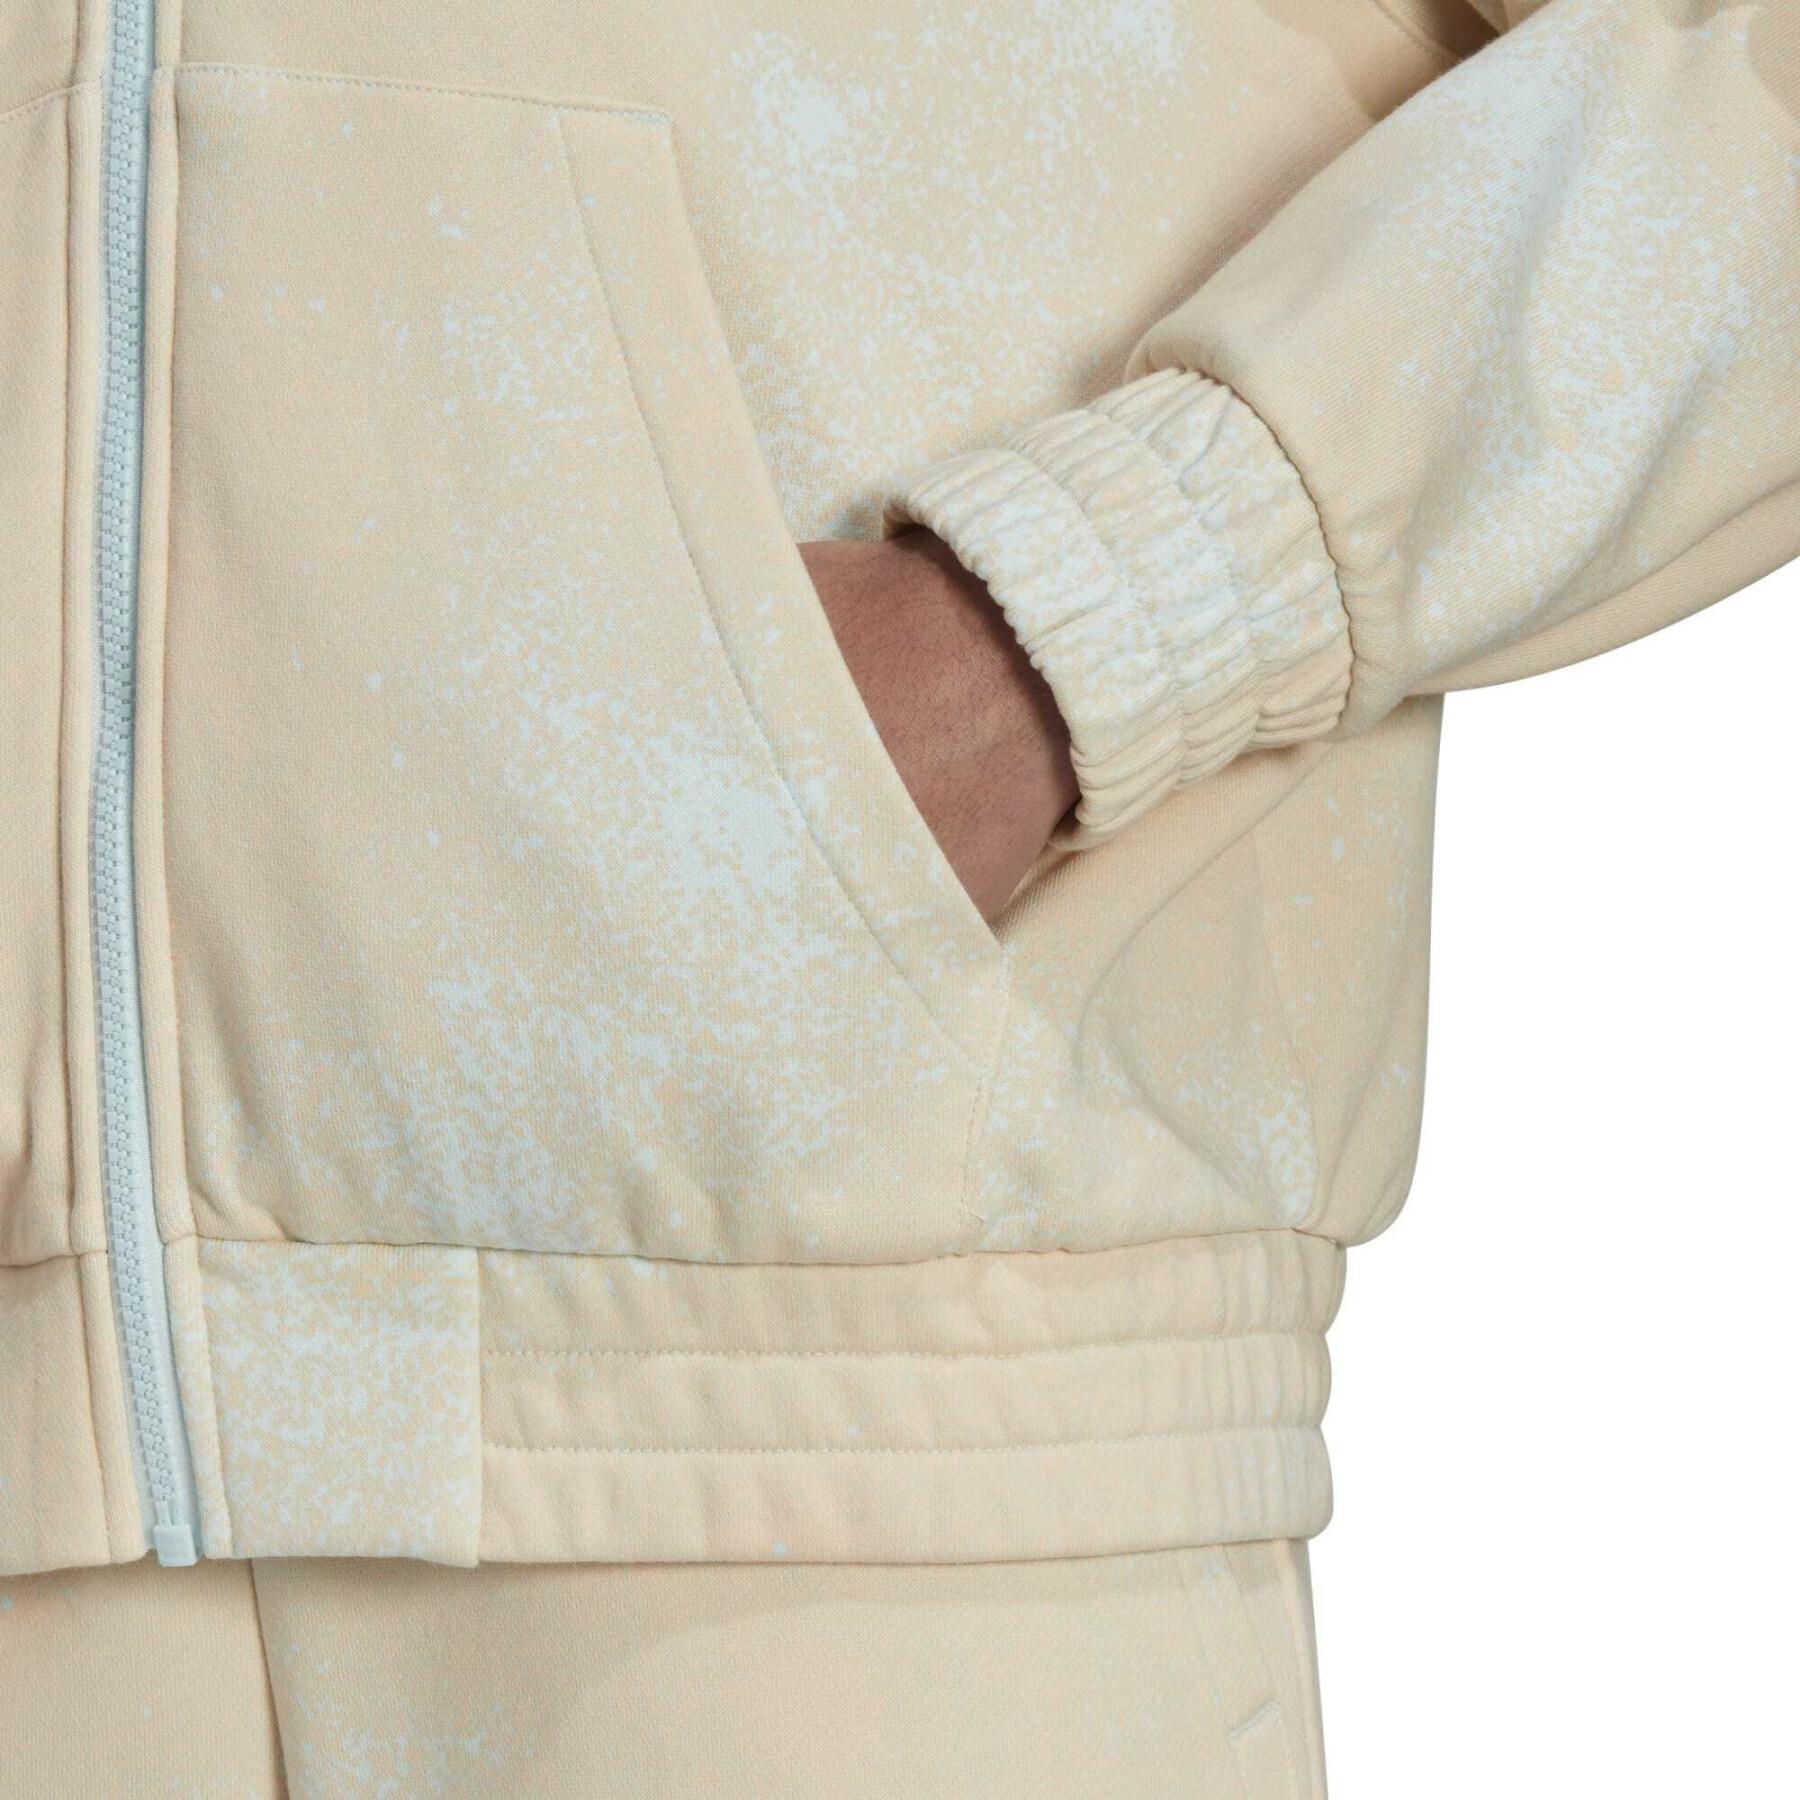 Women's zip-up hoodie adidas Originals Allover Print